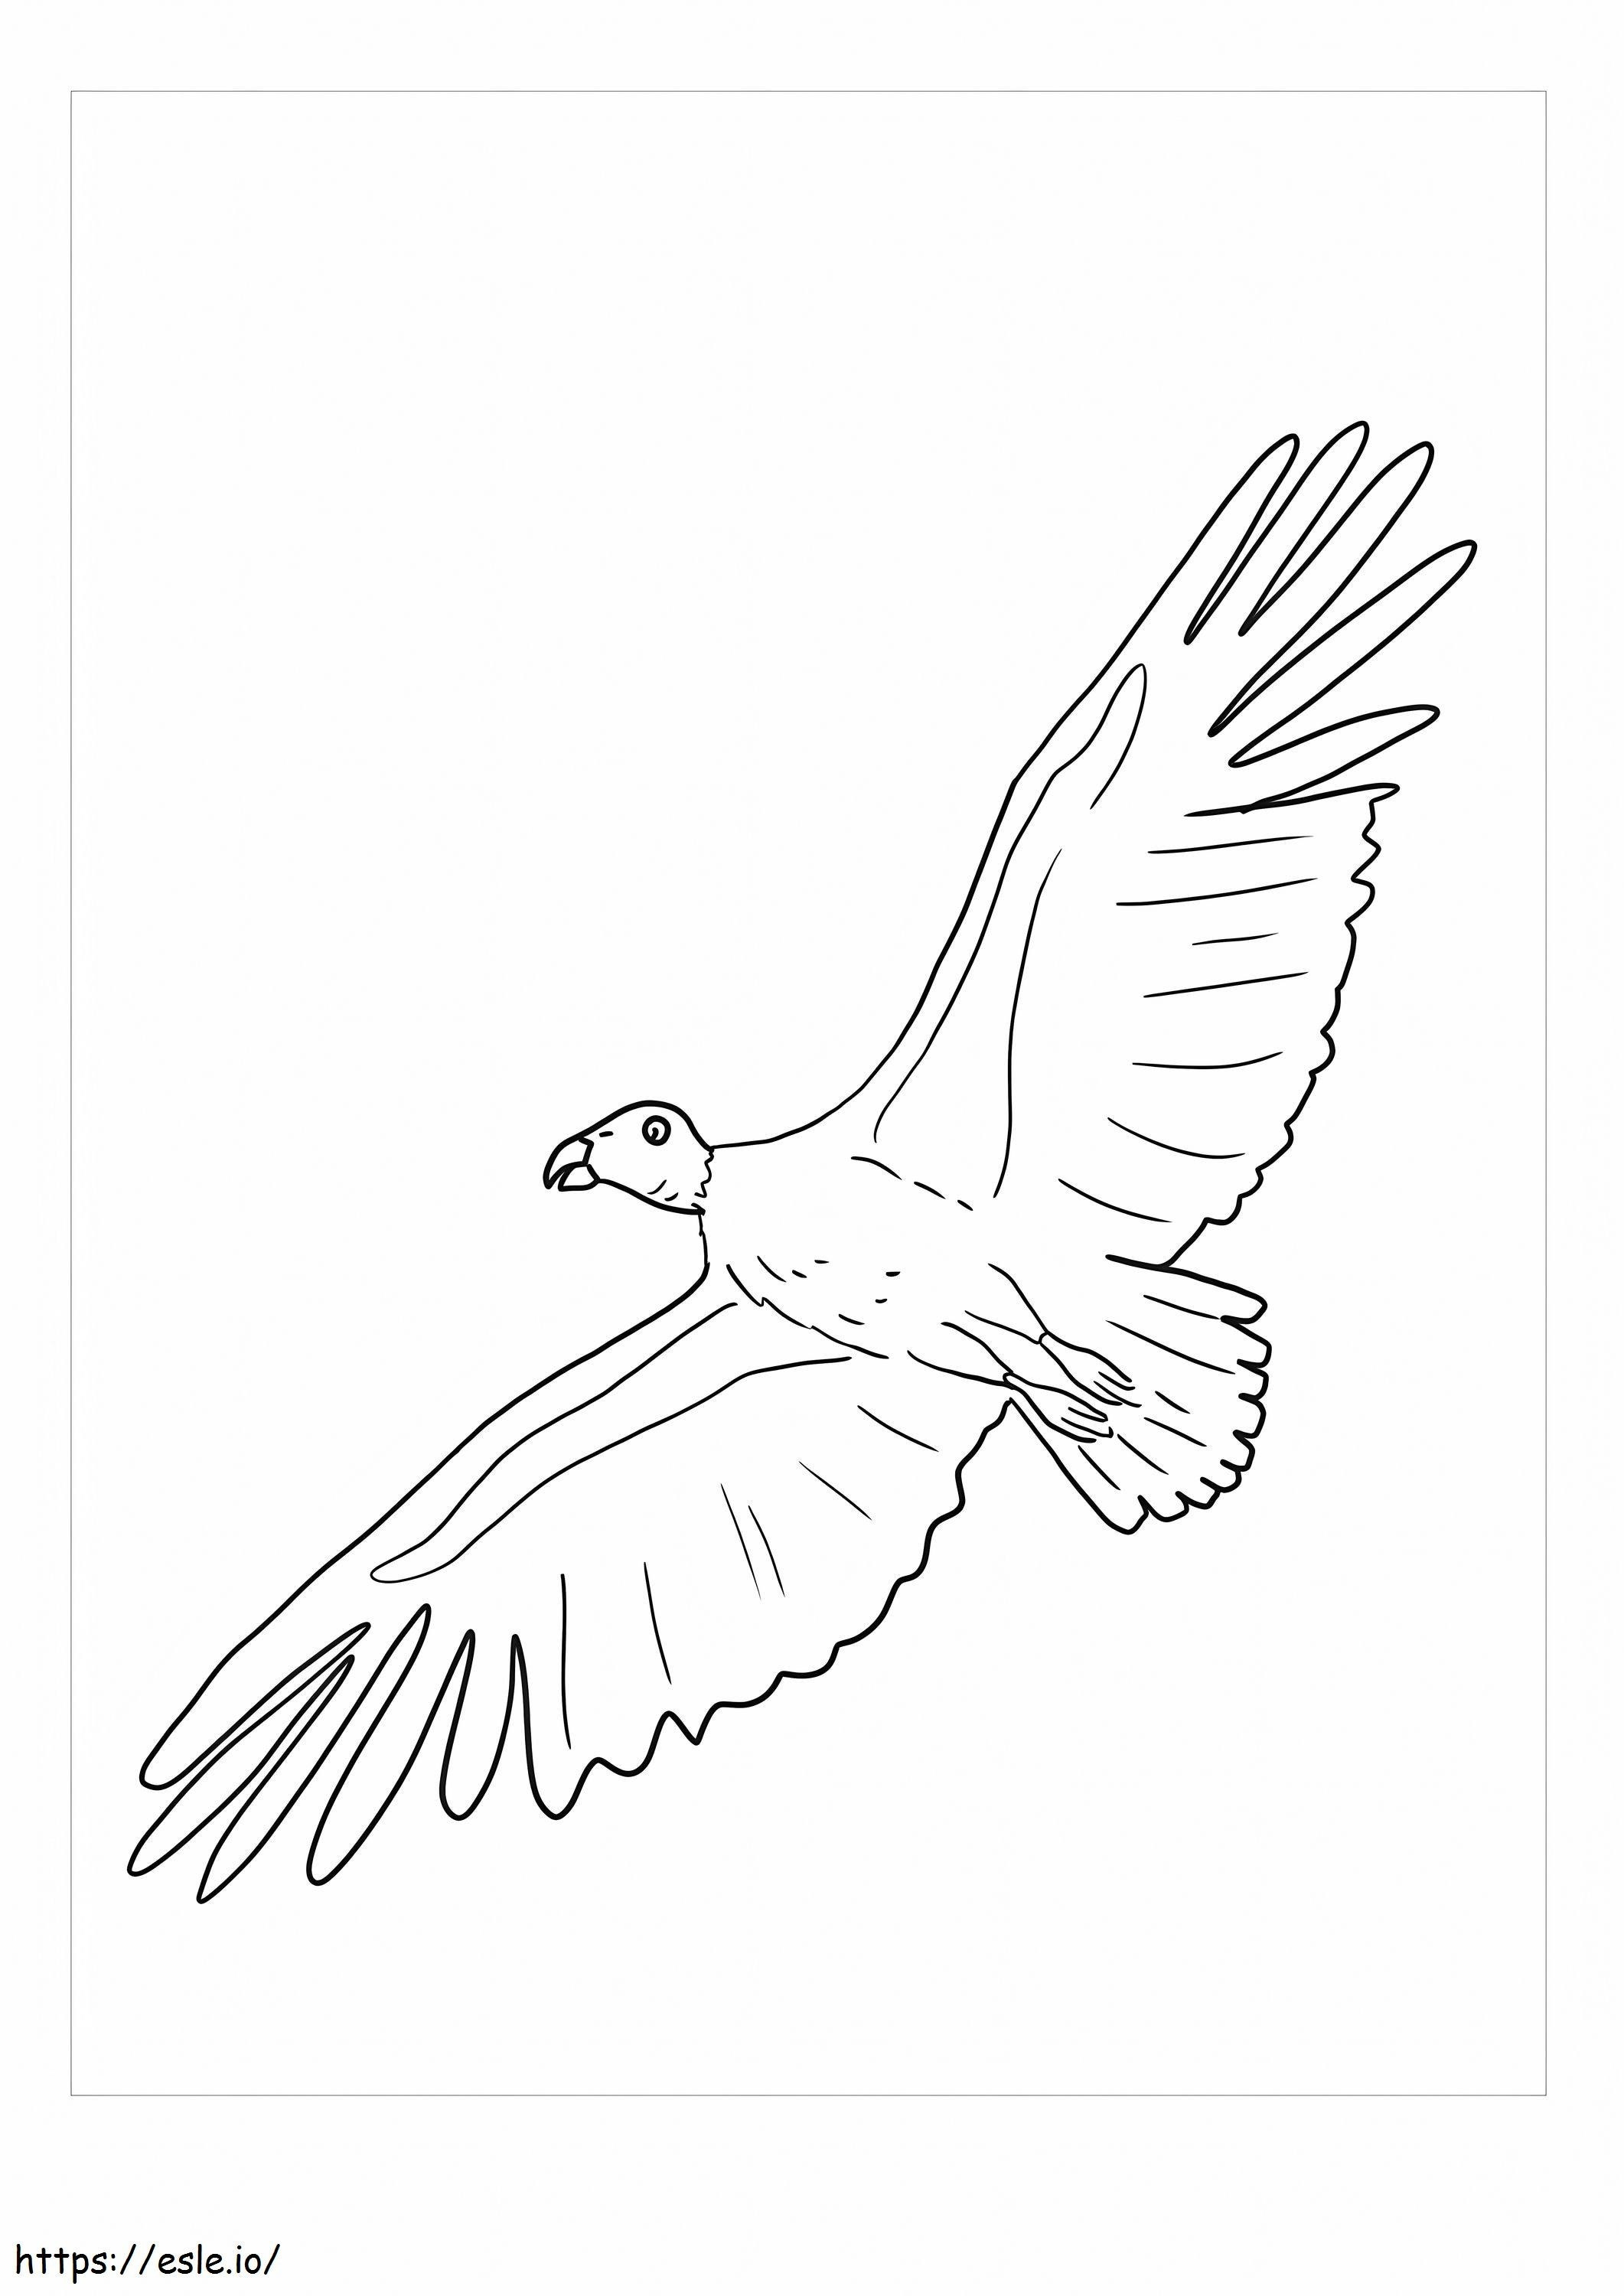 Condor Flight coloring page